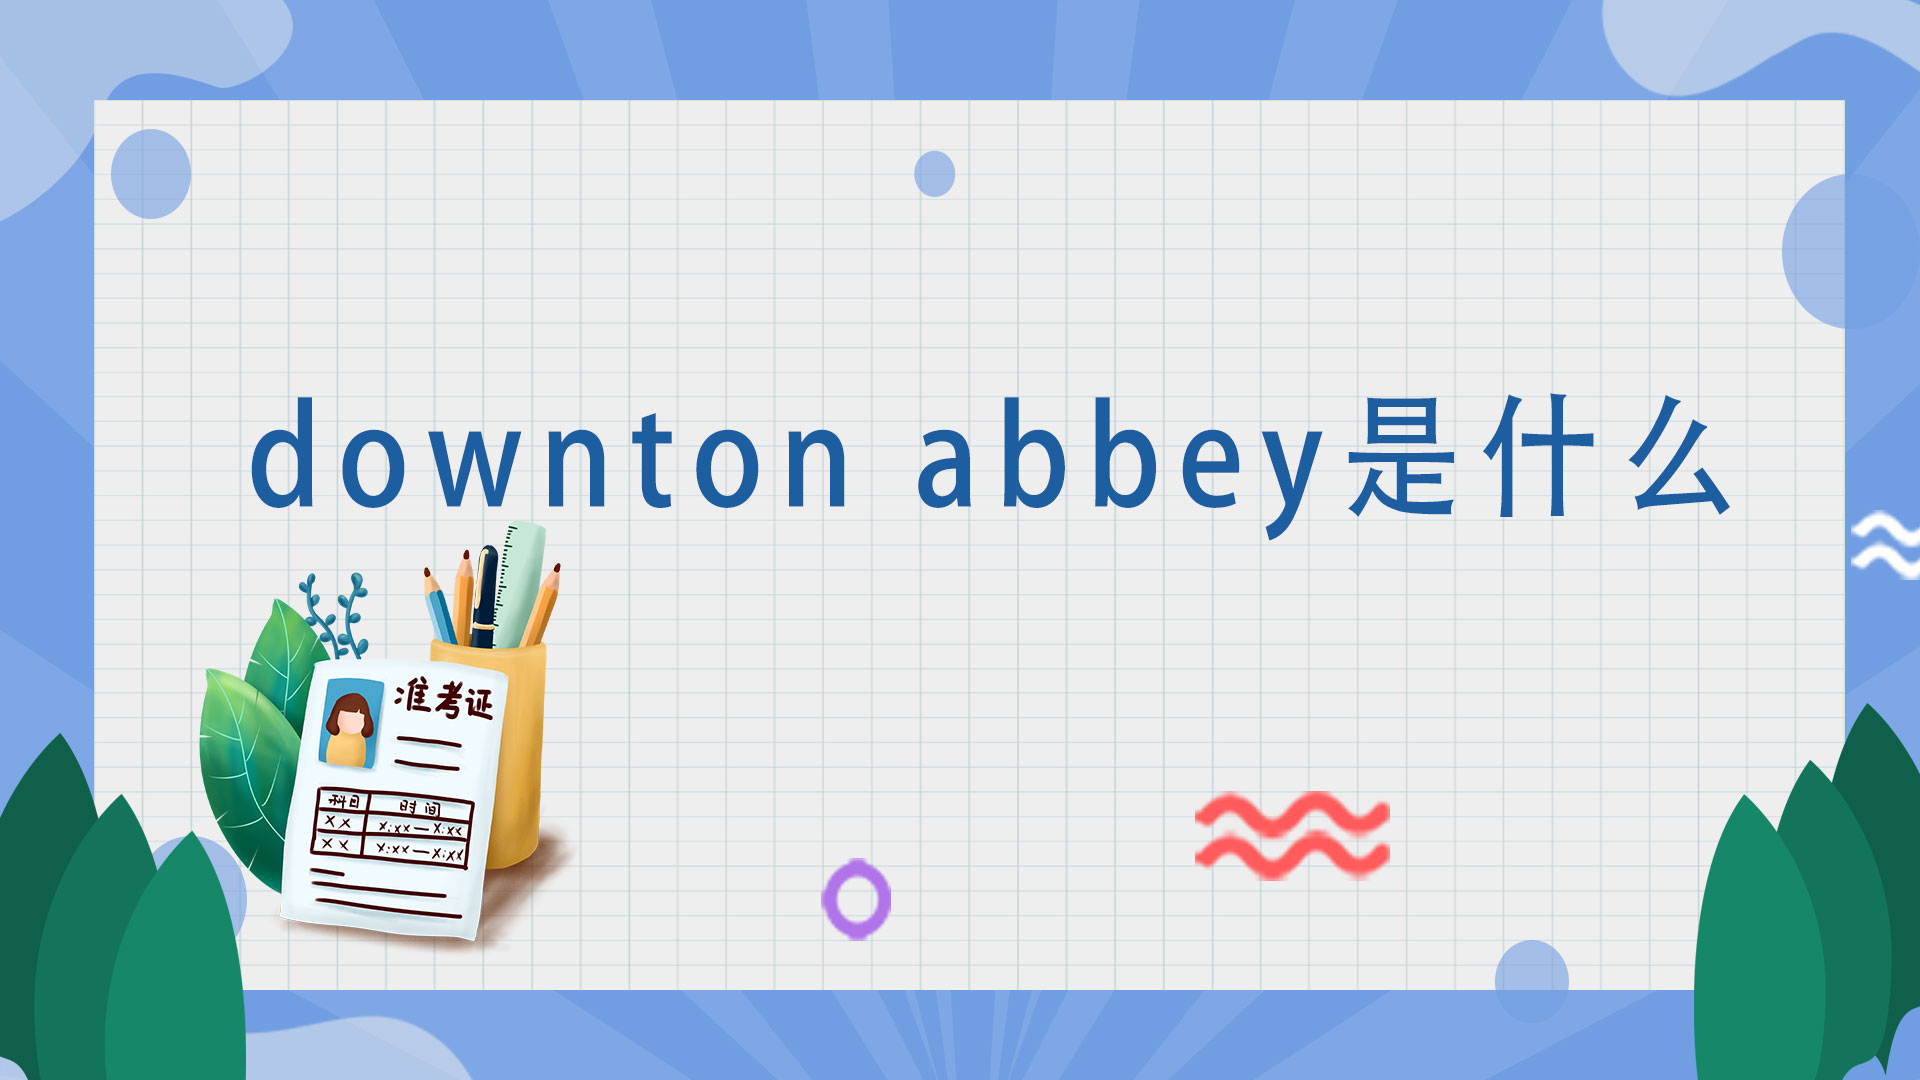 downton abbey是什么